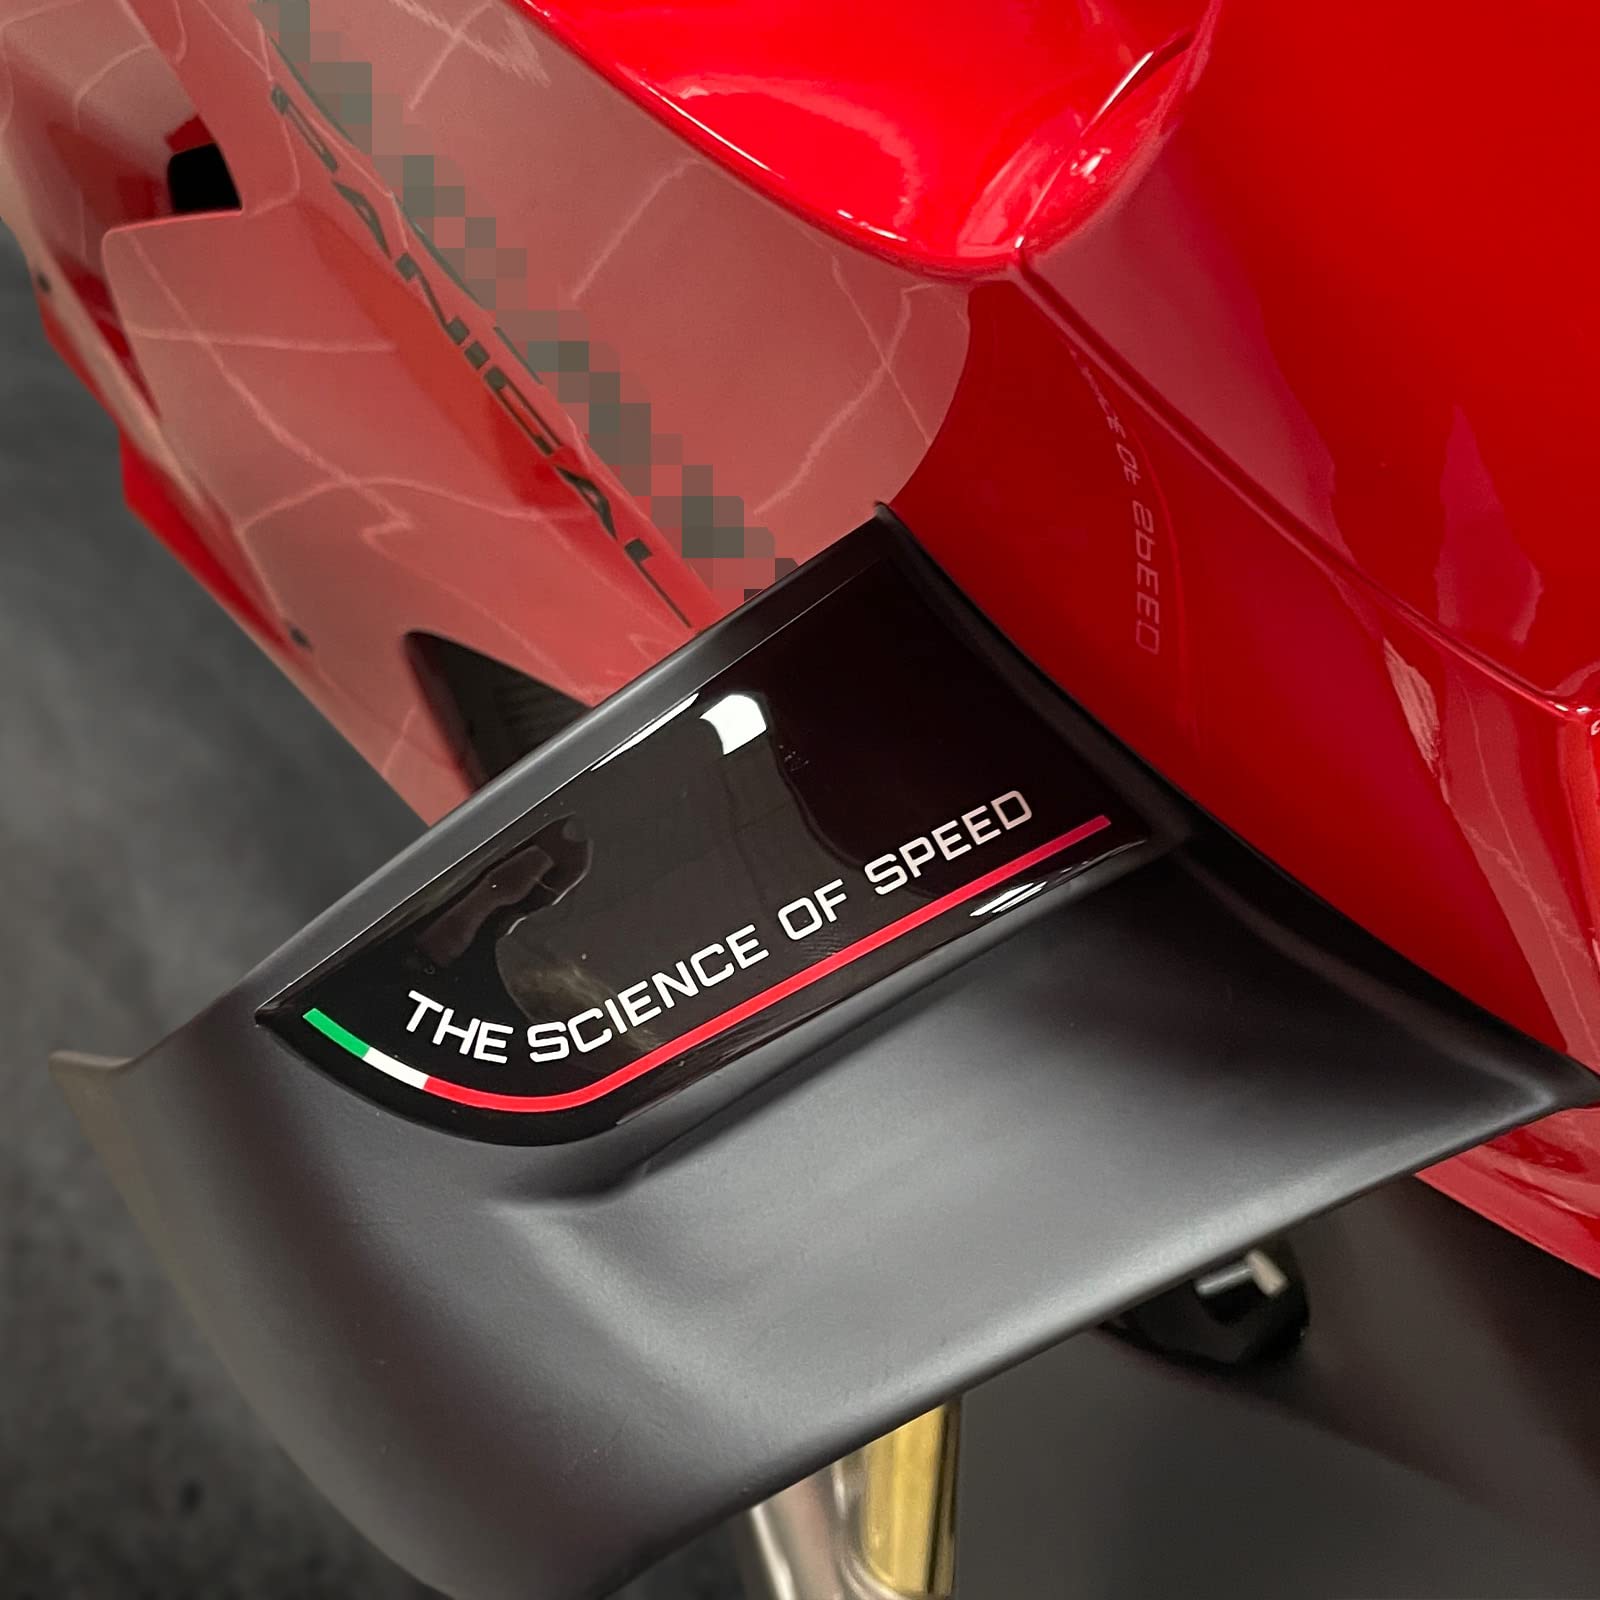 Resin Bike Aufkleber für Motorrad Kompatibel mit Ducati Panigale V4 und V4s 2022. Seitliche Schutzabdeckungen für die Flügel vor Stößen und Kratzern. Paar 3D-Harzklebstoff - Stickers - Made in Italy von Resin Bike